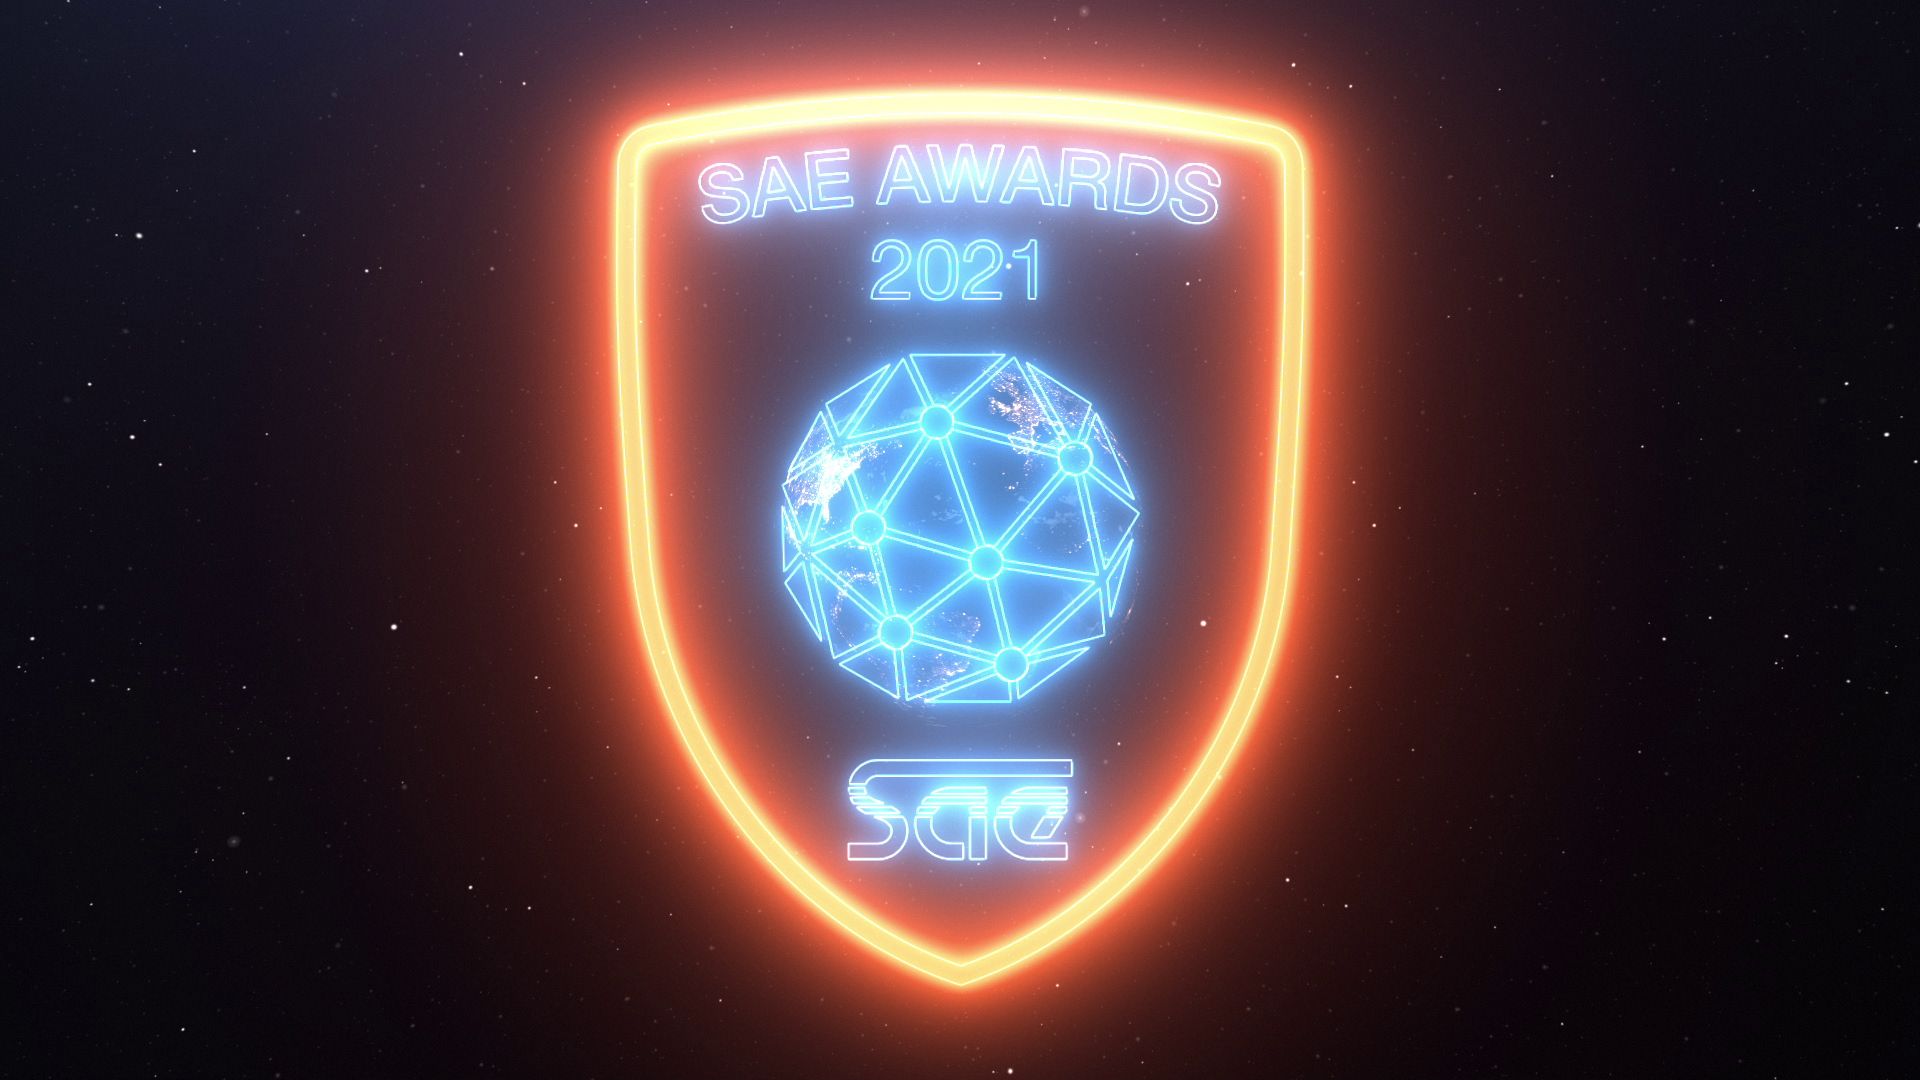 Projekt SAE Awards - Show